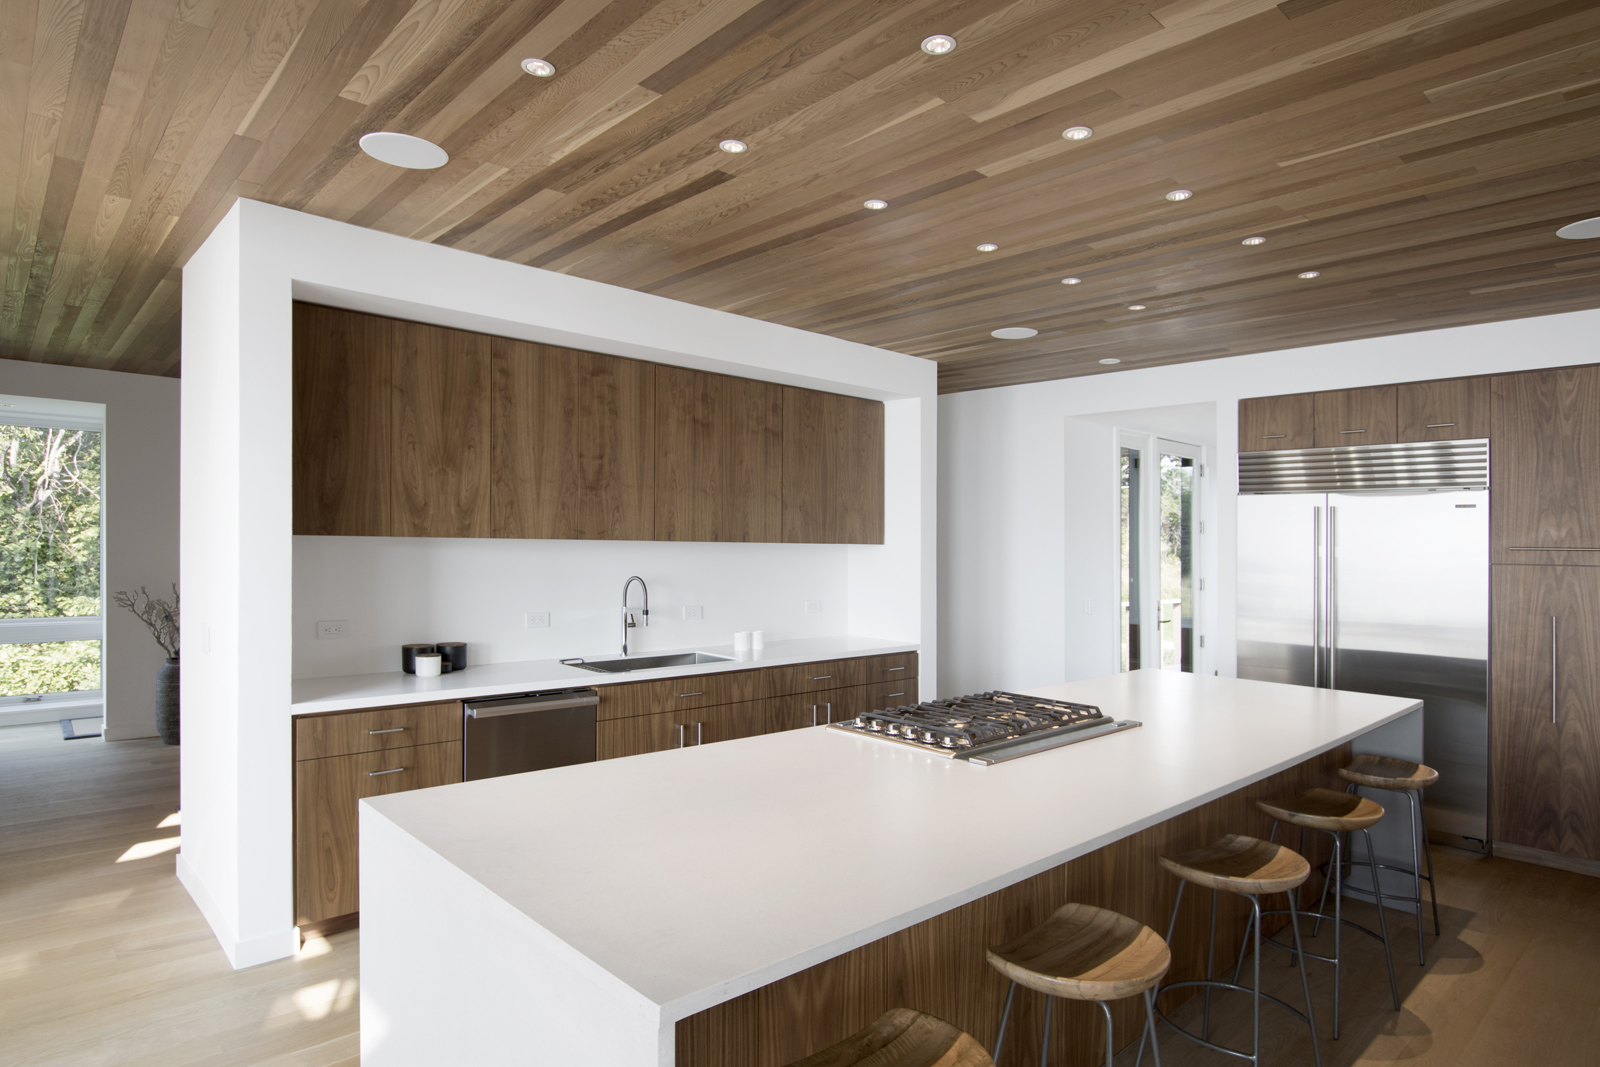 15-res4-resolution-4-architecture-modern-modular-house-prefab-home-north-fork-bluff-house-interior-kitchen-island-millwork.jpg